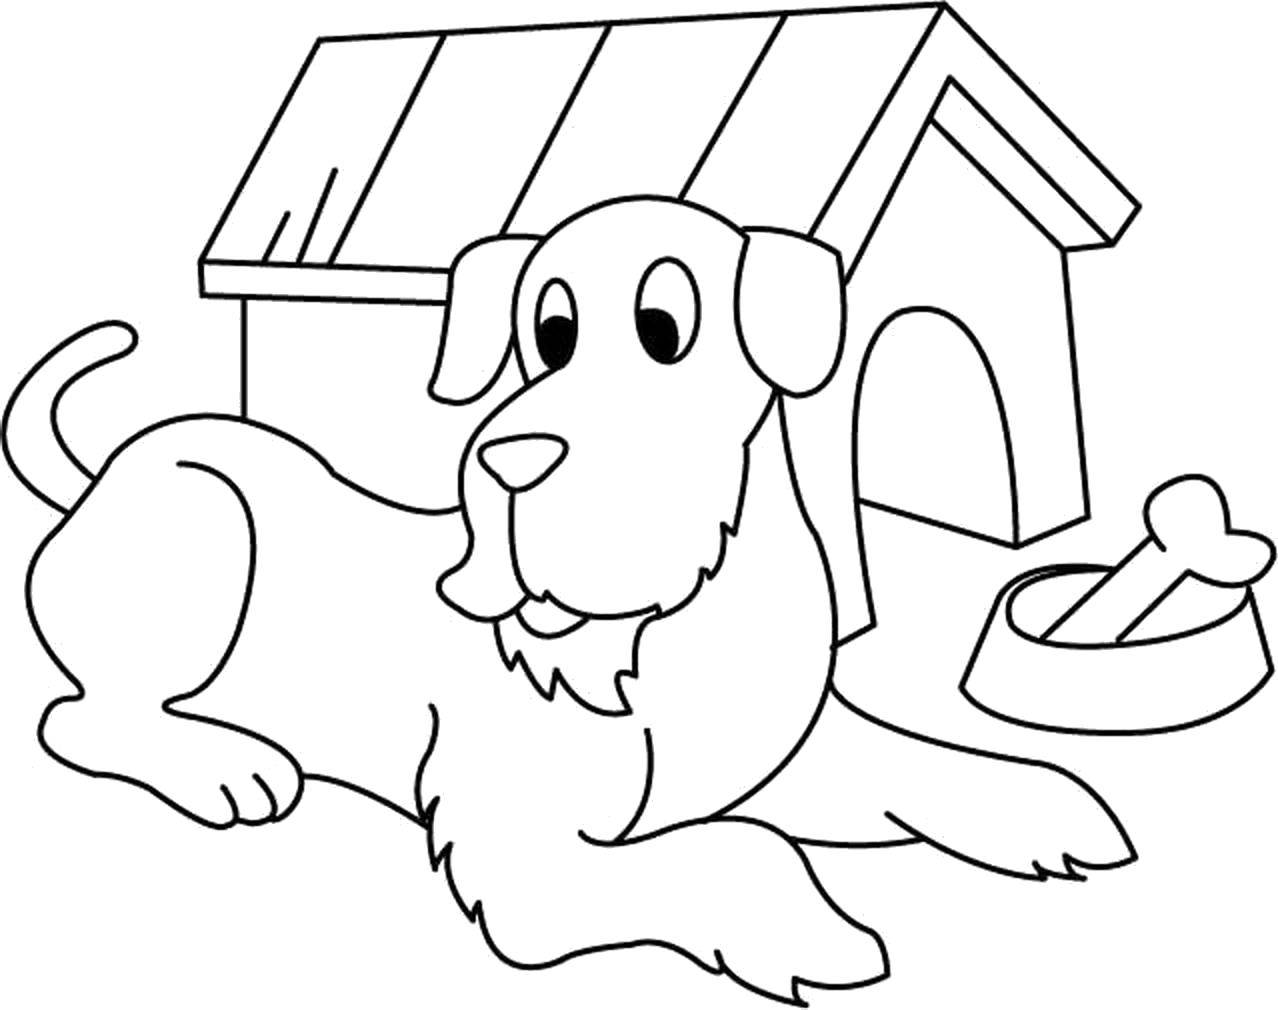 Раскраски собаки и будки для детей. Учимся узнавать животных. (собака, будка, узнавать)